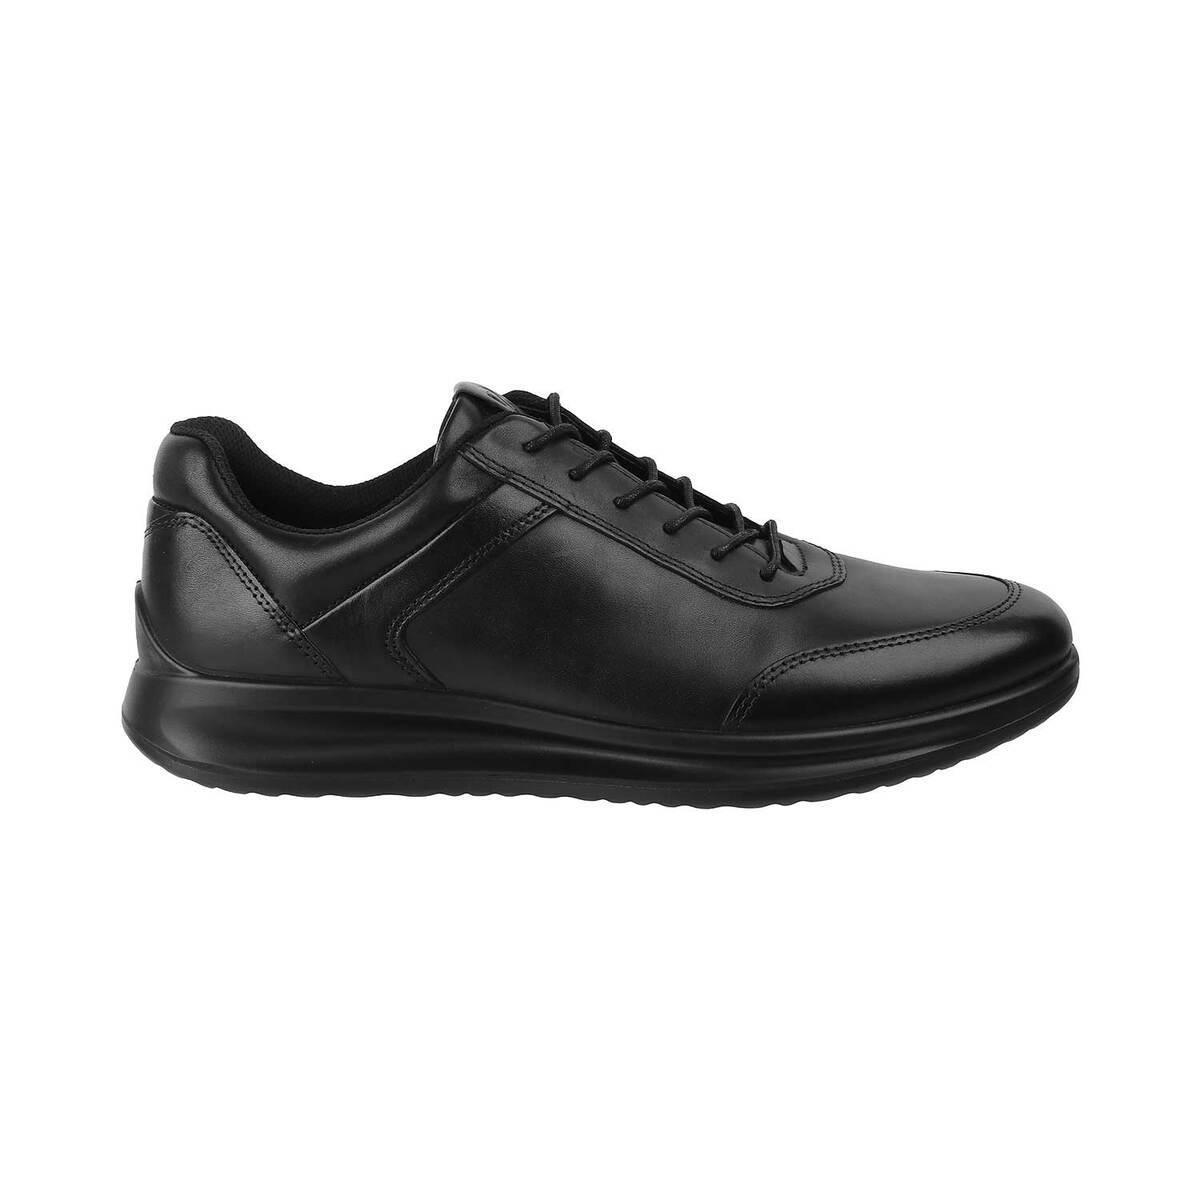 Buy Men Blue Casual Sneakers Online | SKU: 252-25-45-41-Metro Shoes